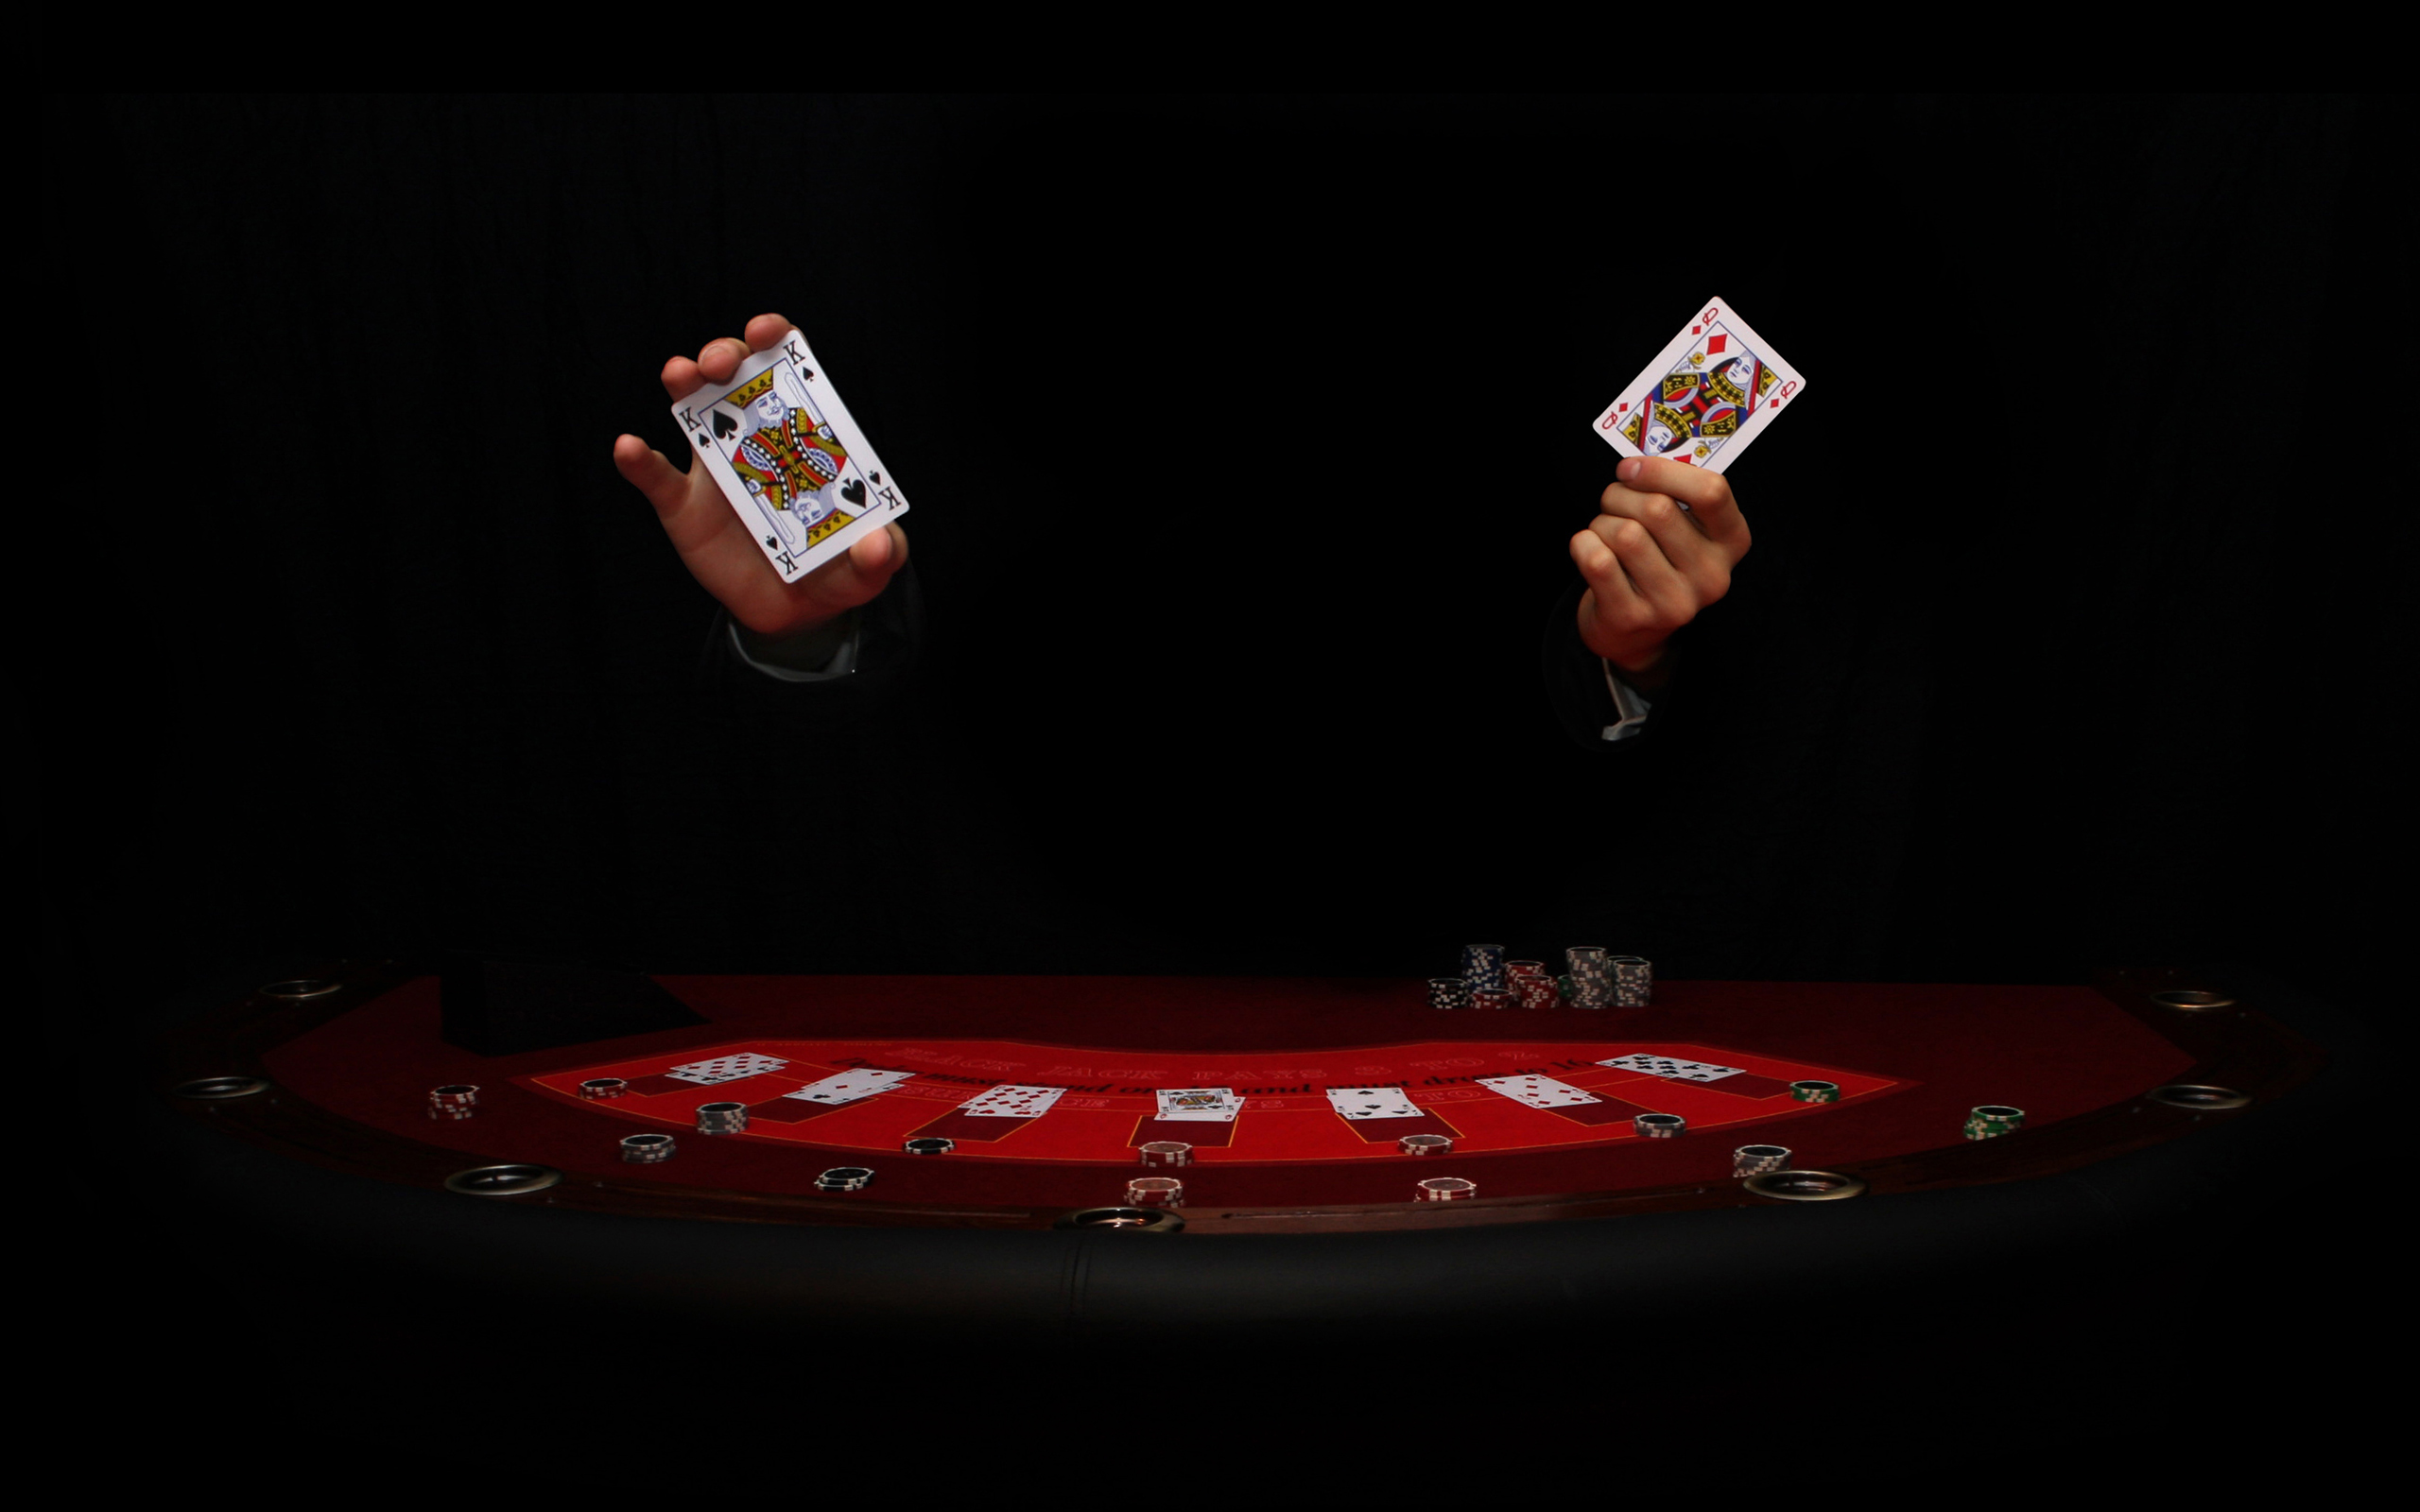 Игра в интернет-казино — самые достойные способы организации досуга